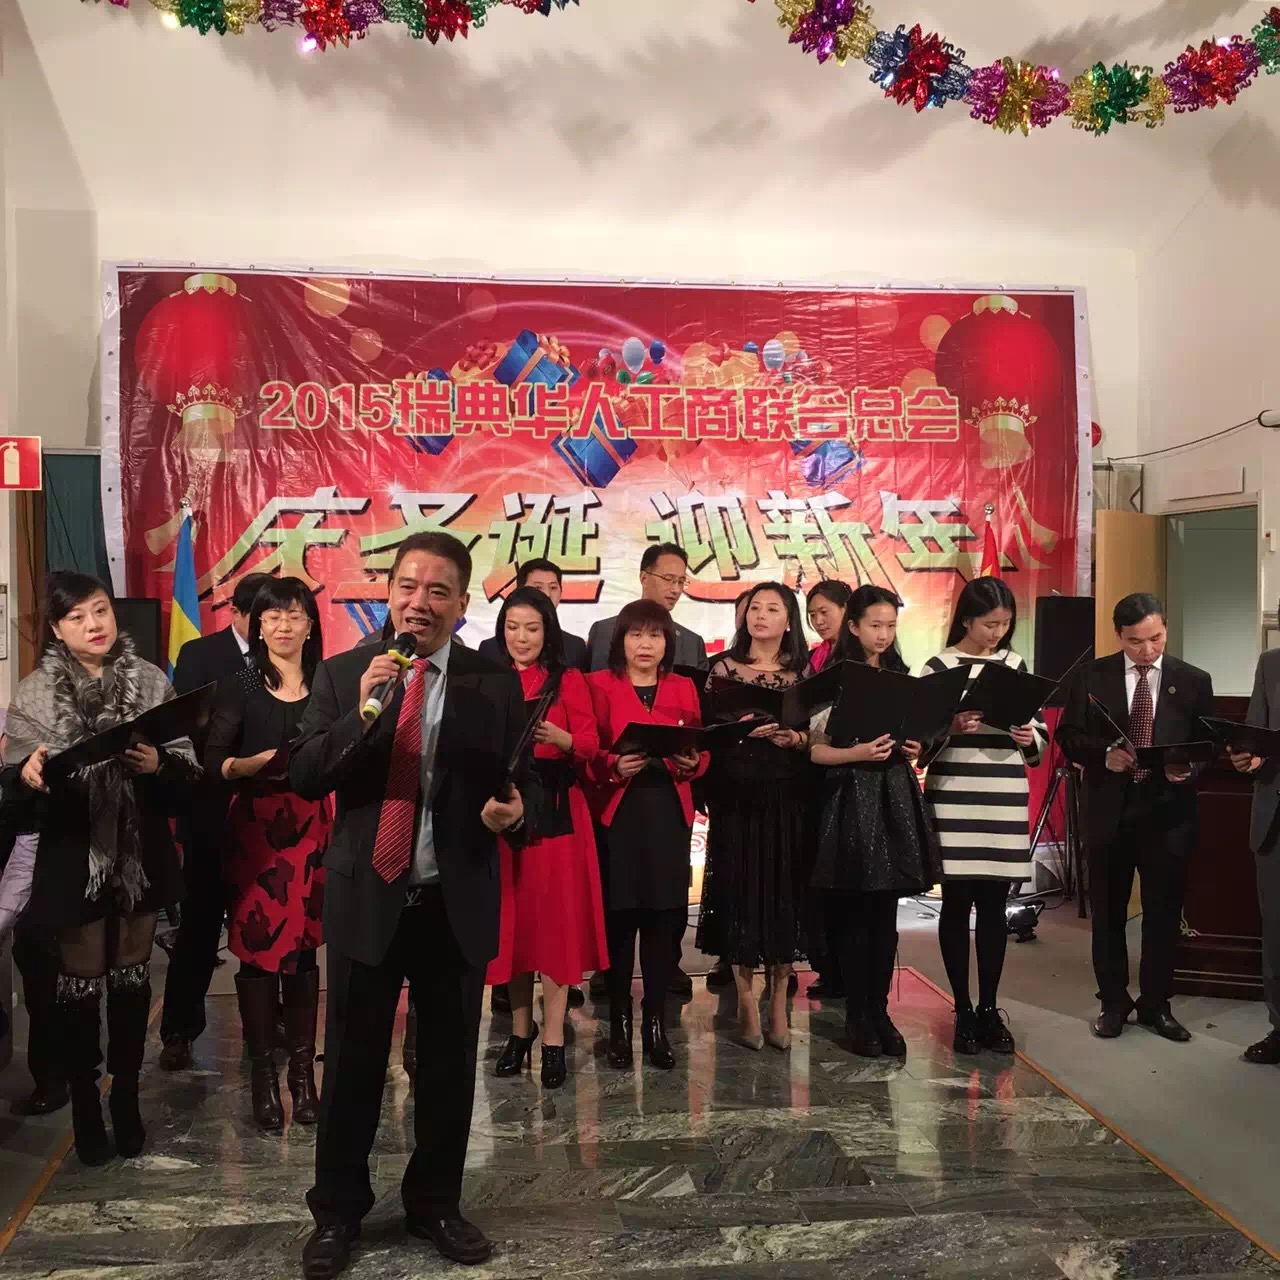 瑞典华人工商联合商会圣诞联欢会